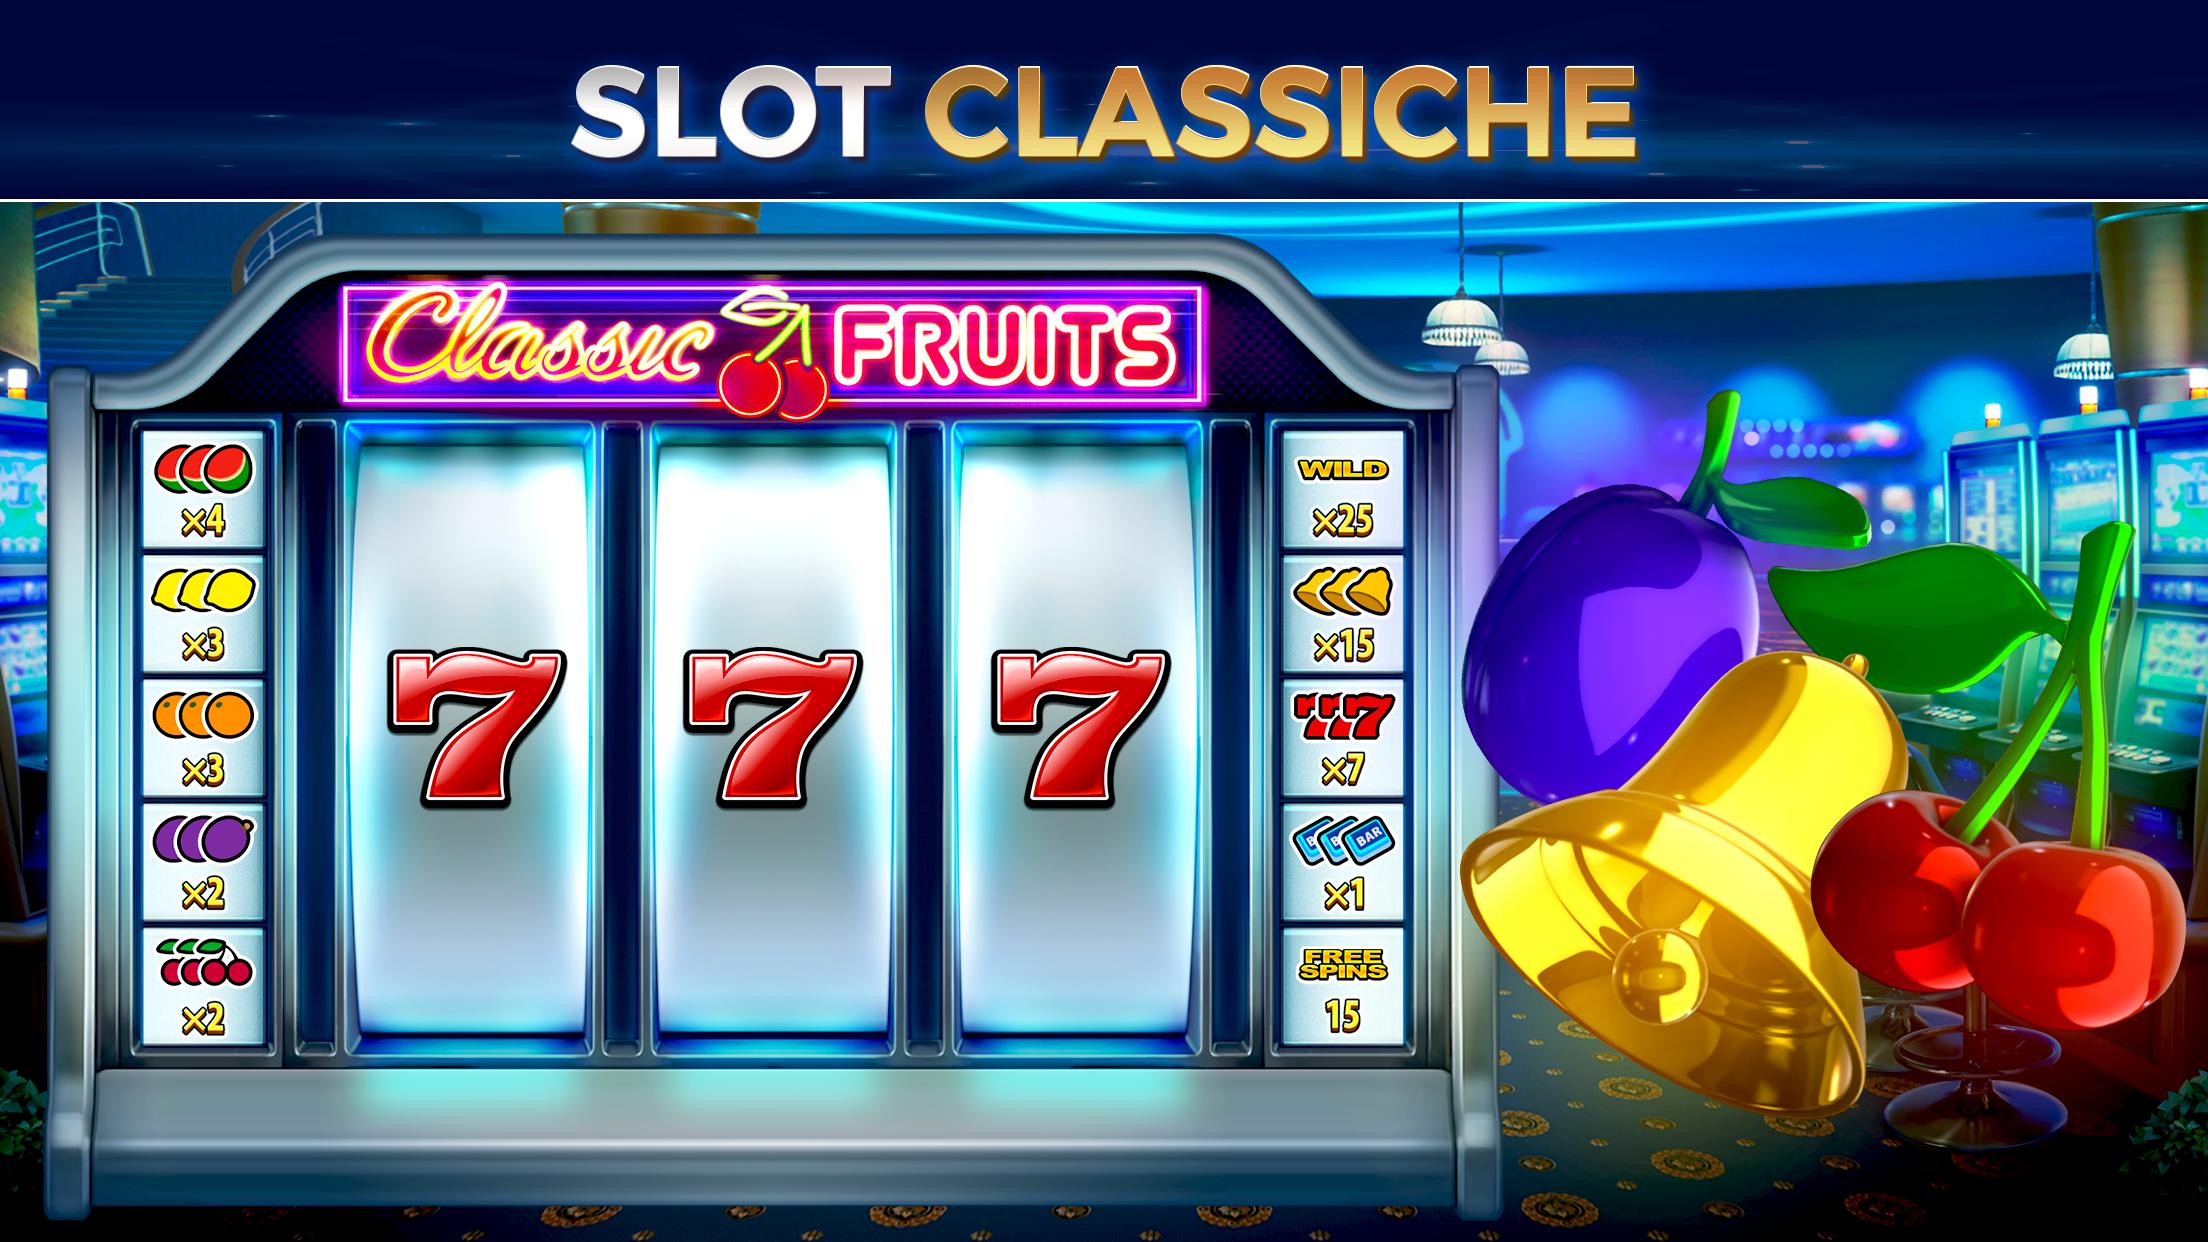 Casino Di Vegas E Slot Slottist For Android Apk Download - roblox videos on minigiochi com pagina 121